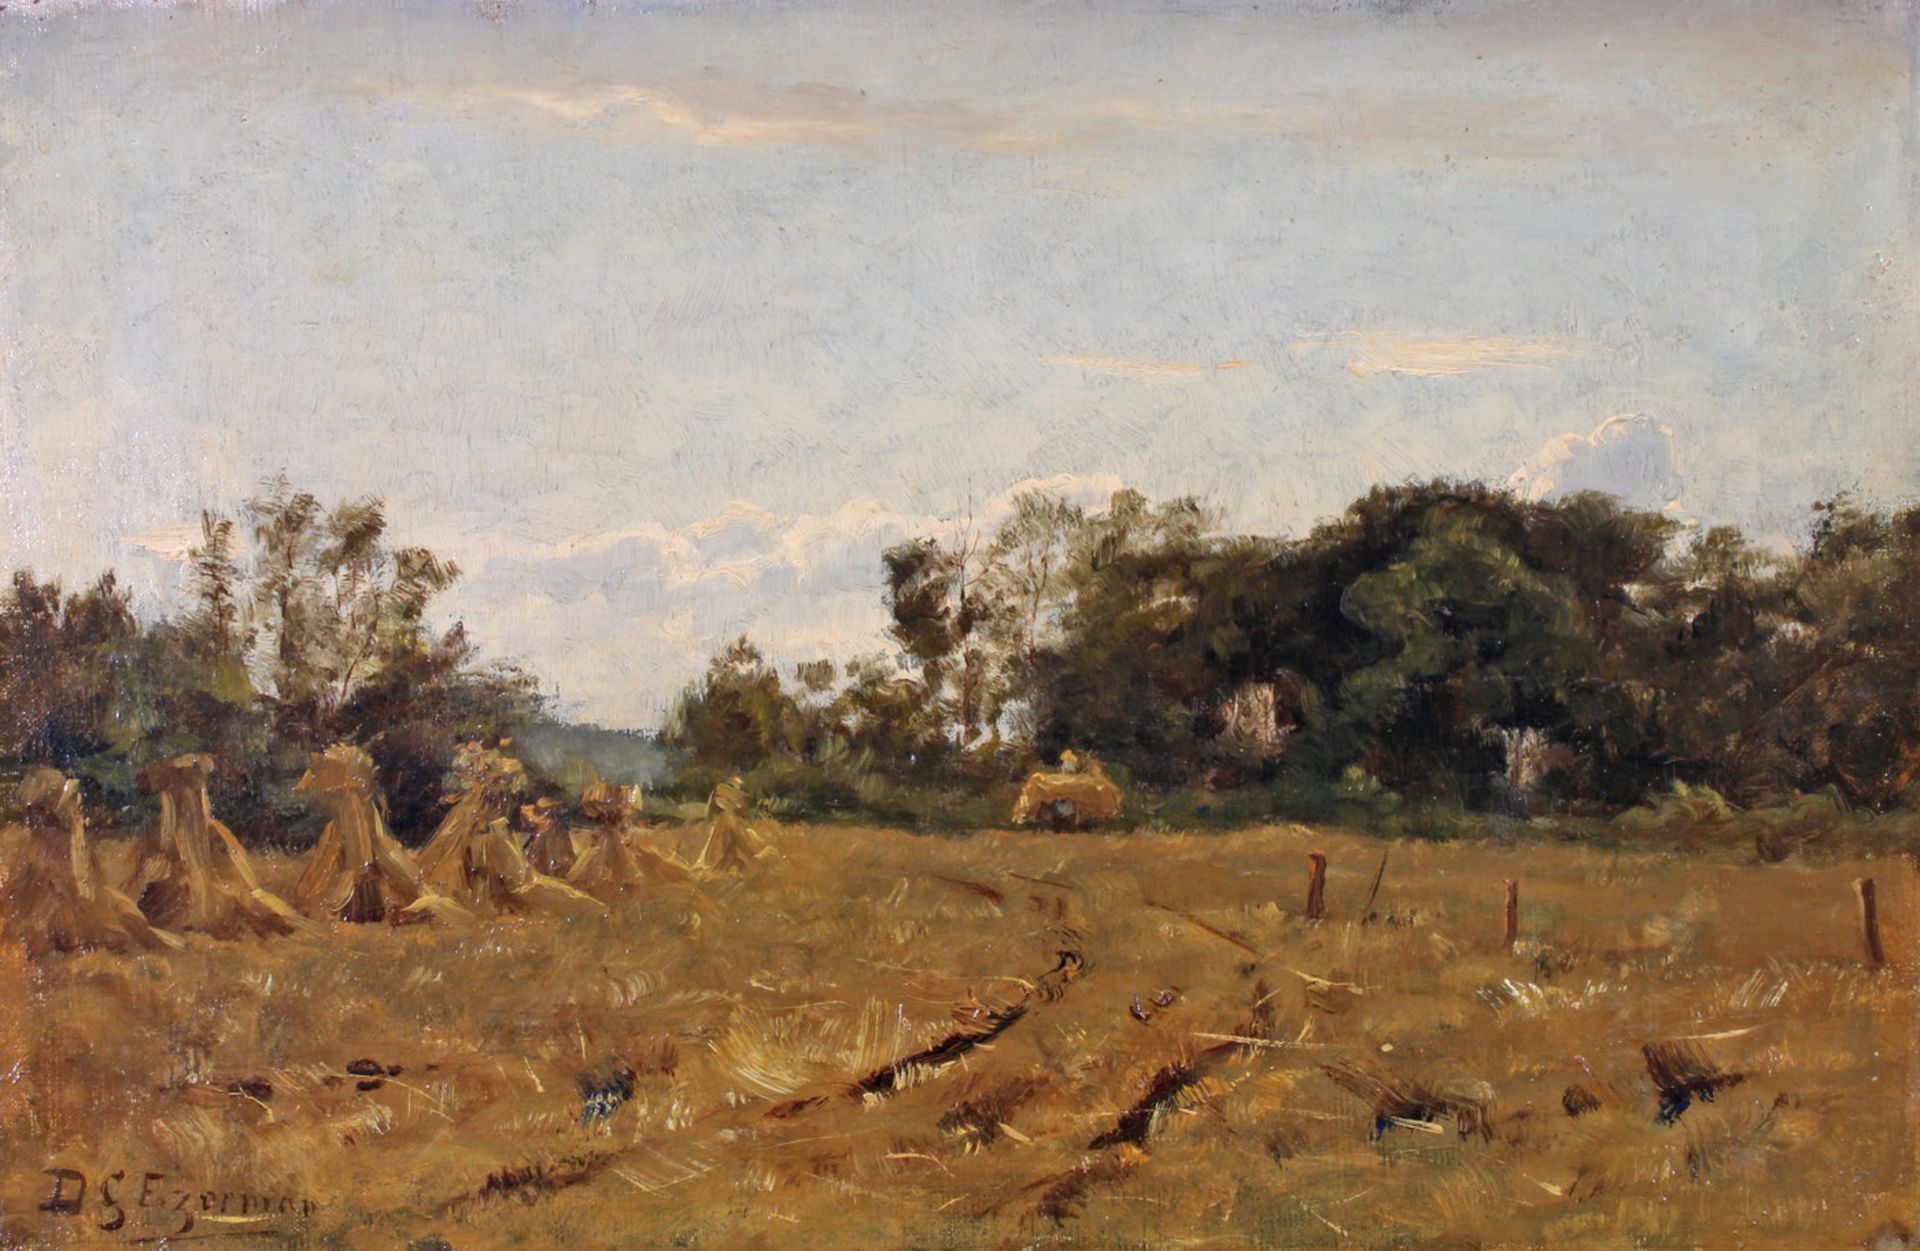 Ezerman, Dirk Gerard (1848 - 1913, Landschaftsmaler), "Heugarben", Öl auf Leinwand, doubliert,